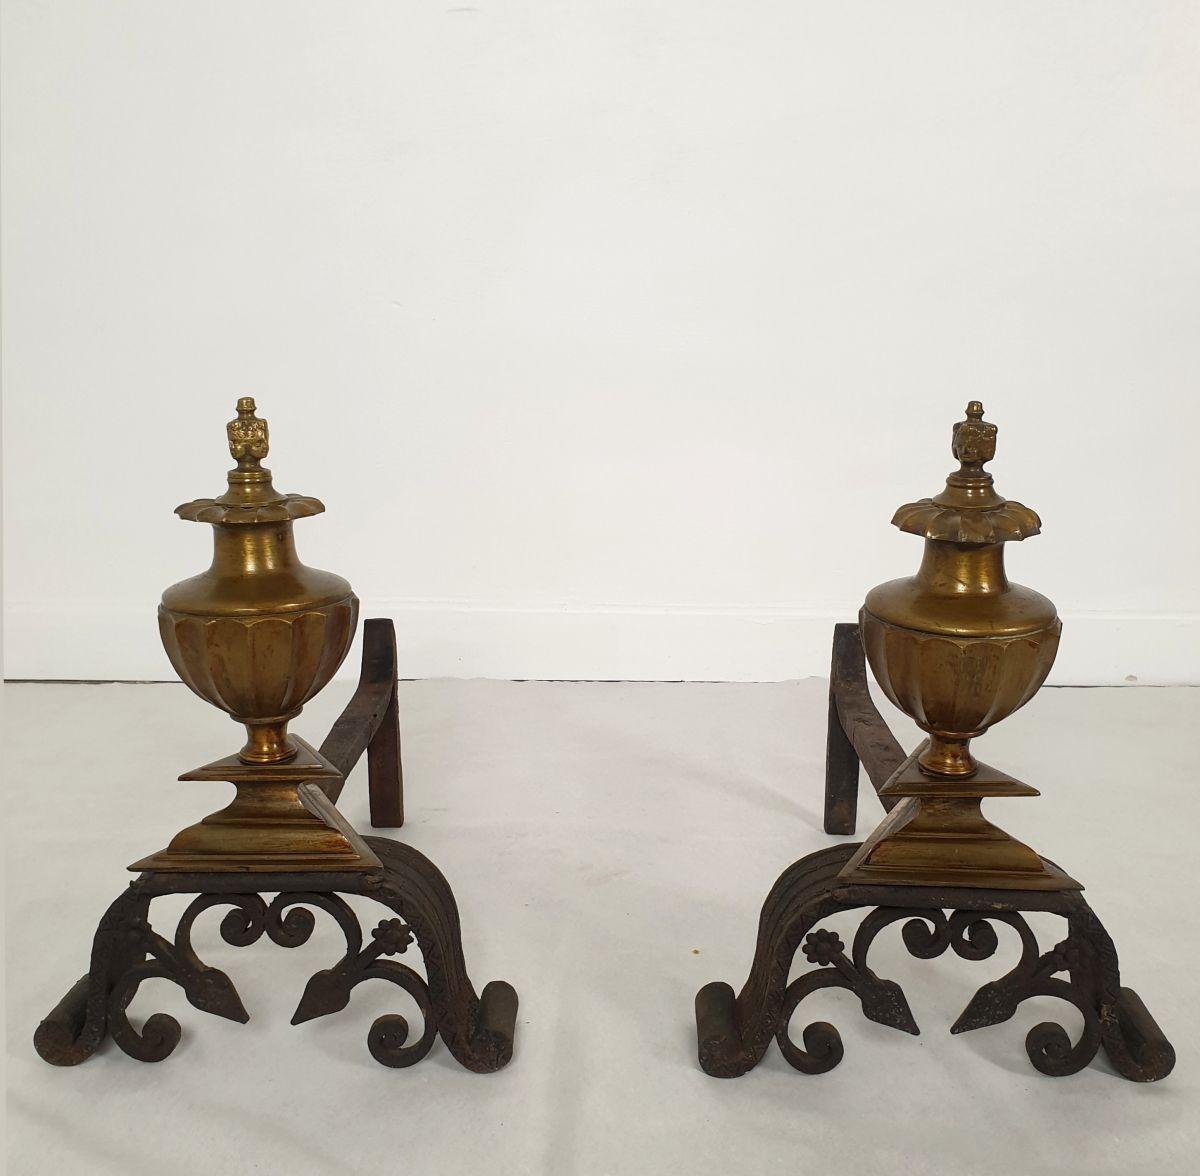 Ein Paar italienische dekorative Andirons, um 1900.
Das Kaminpaar ist aus Bronze und handgefertigtem Schmiedeeisen gefertigt.
Vollständig verziert mit 4 Gesichtern auf der Oberseite der Bronzeelemente; und einem Dekor auf dem Schmiedeeisen.
In sehr